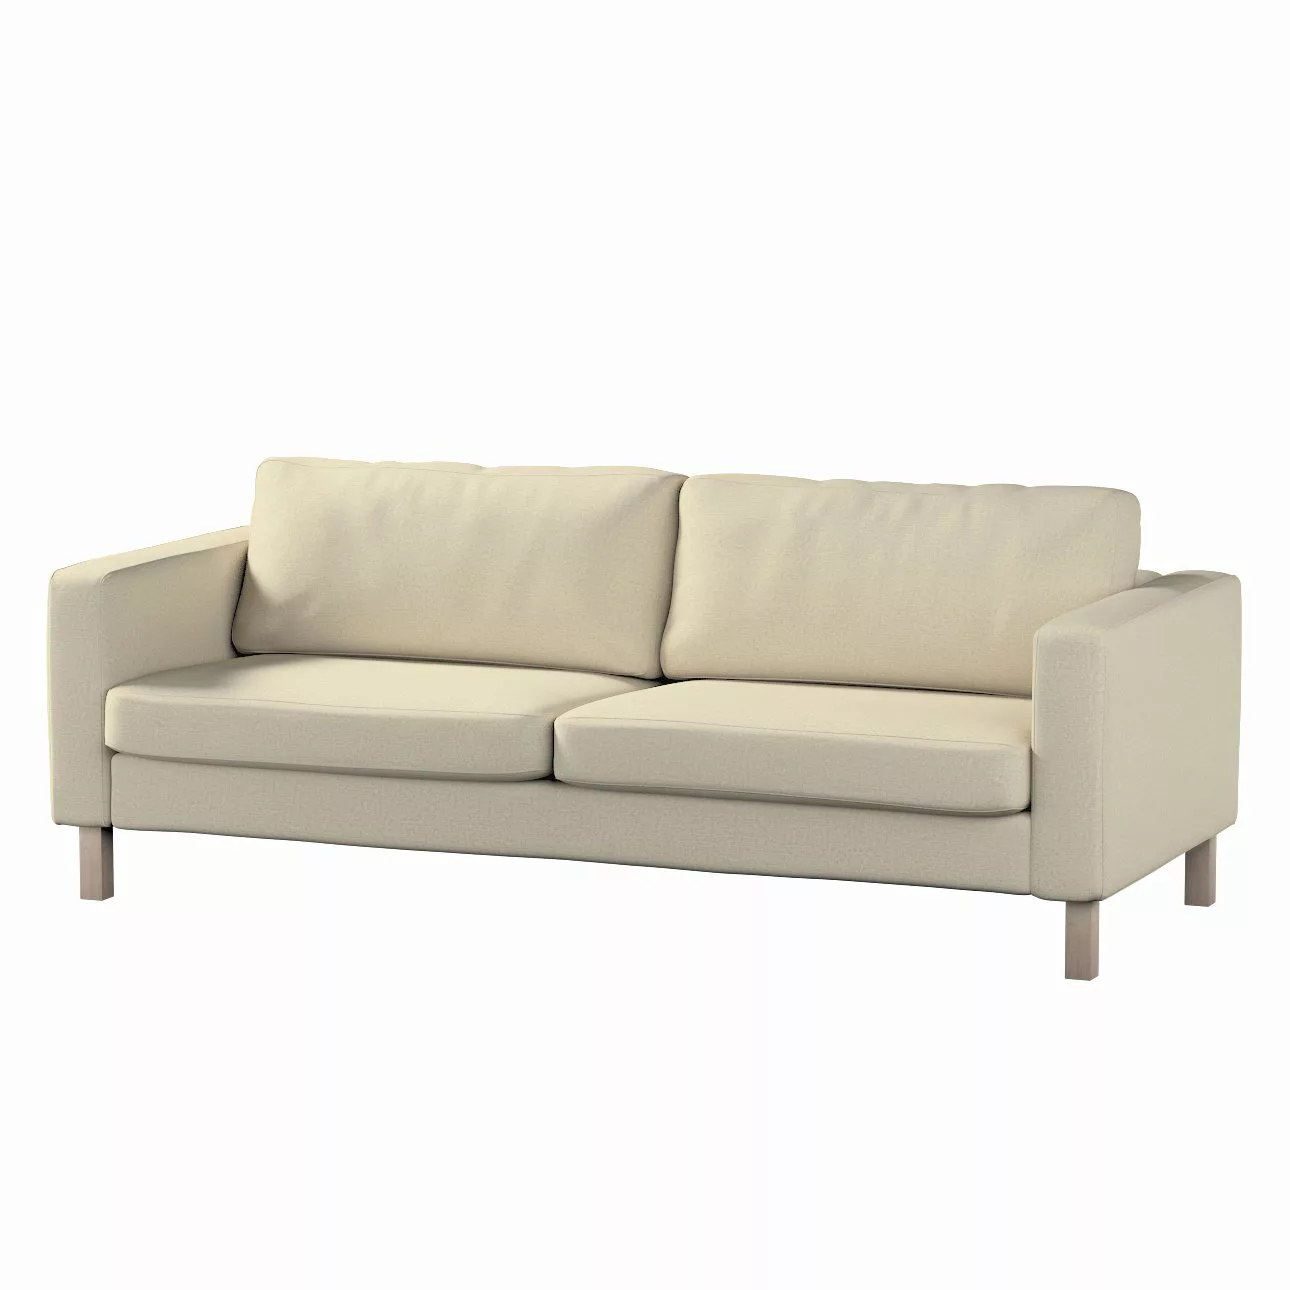 Bezug für Karlstad 3-Sitzer Sofa nicht ausklappbar, kurz, ecru, Bezug für K günstig online kaufen